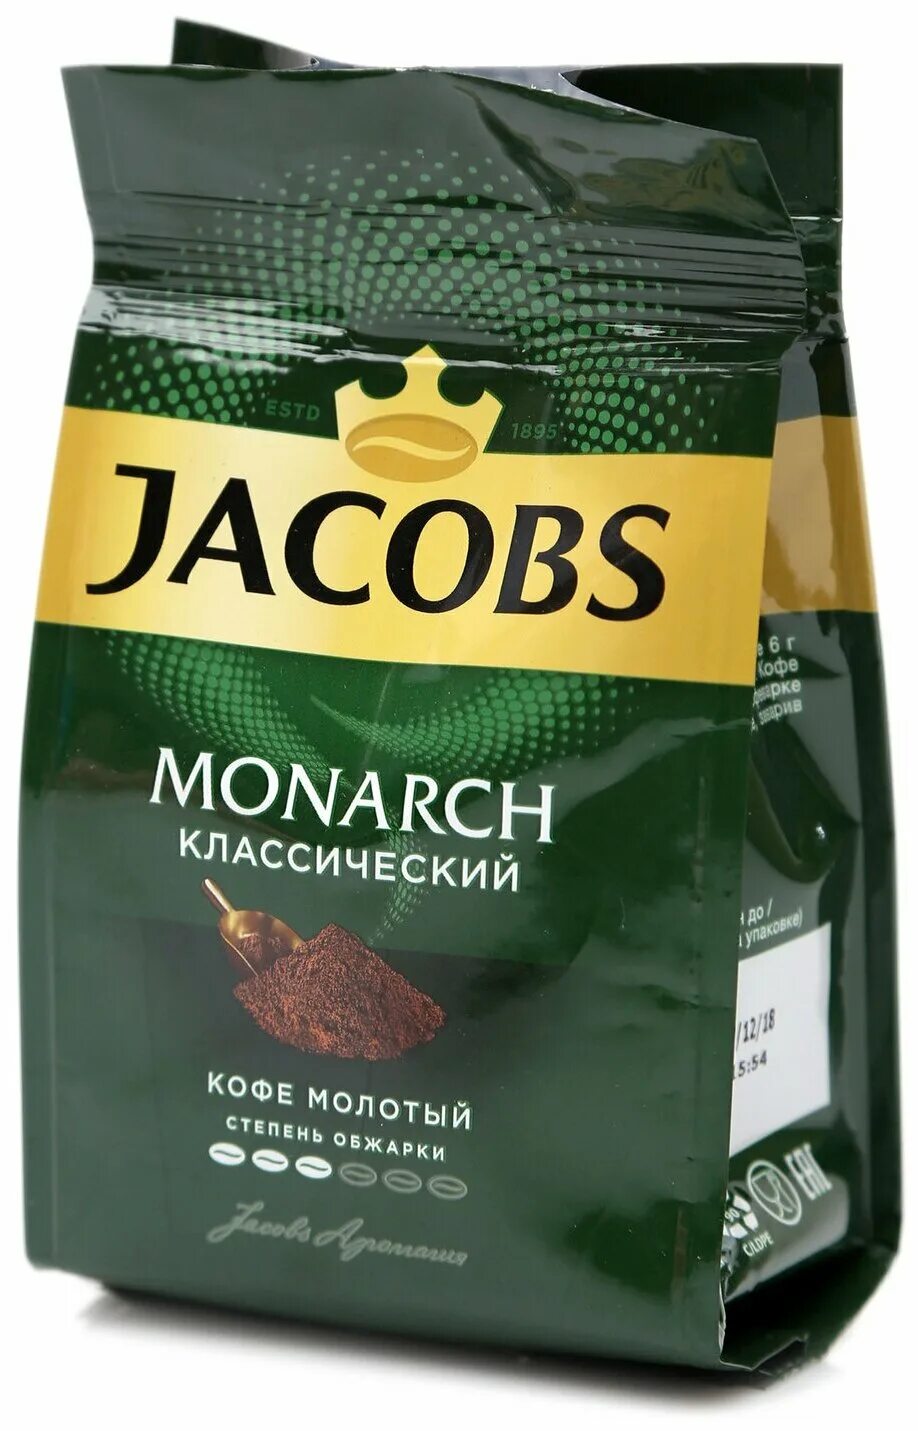 Кофе молотый jacobs. Кофе Якобс Монарх молотый. Якобс Монарх молотый. Кофе молотый Jacobs Monarch, 70 гр. 230г кофе молотый Jacobs Monarch натуральный жареный.